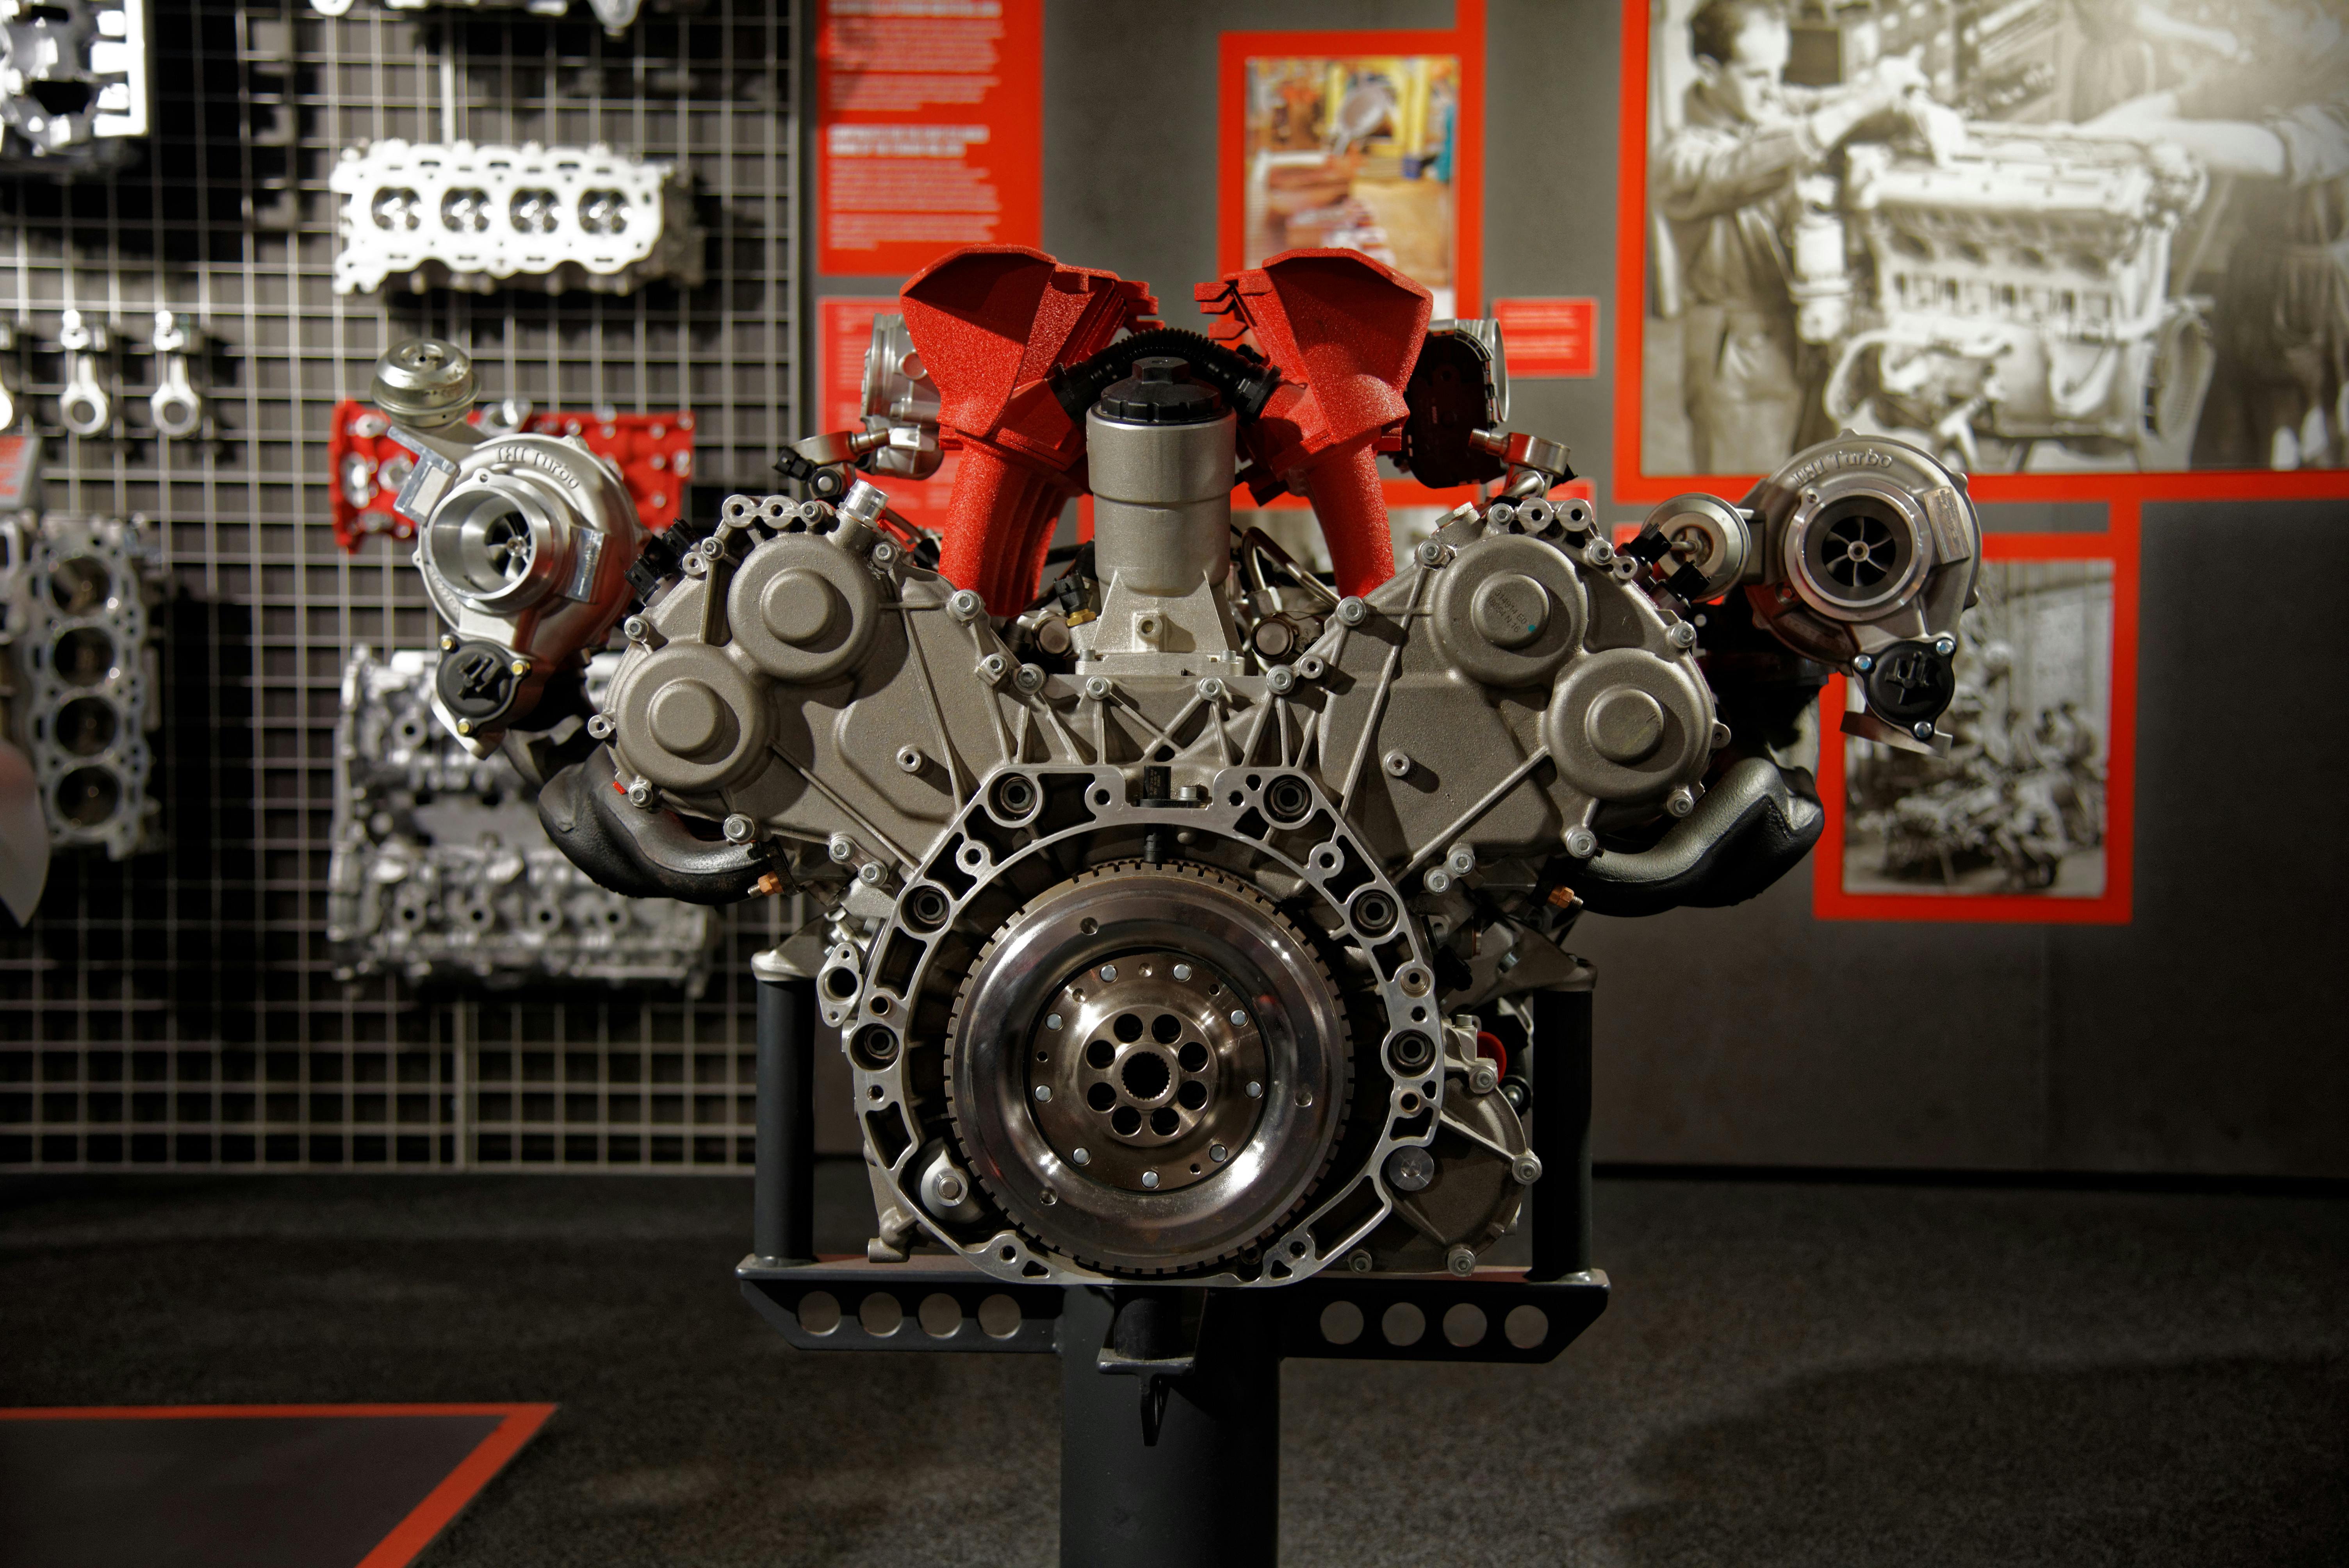 Free stock photo of Ferrari, Ferrari Engine, motor